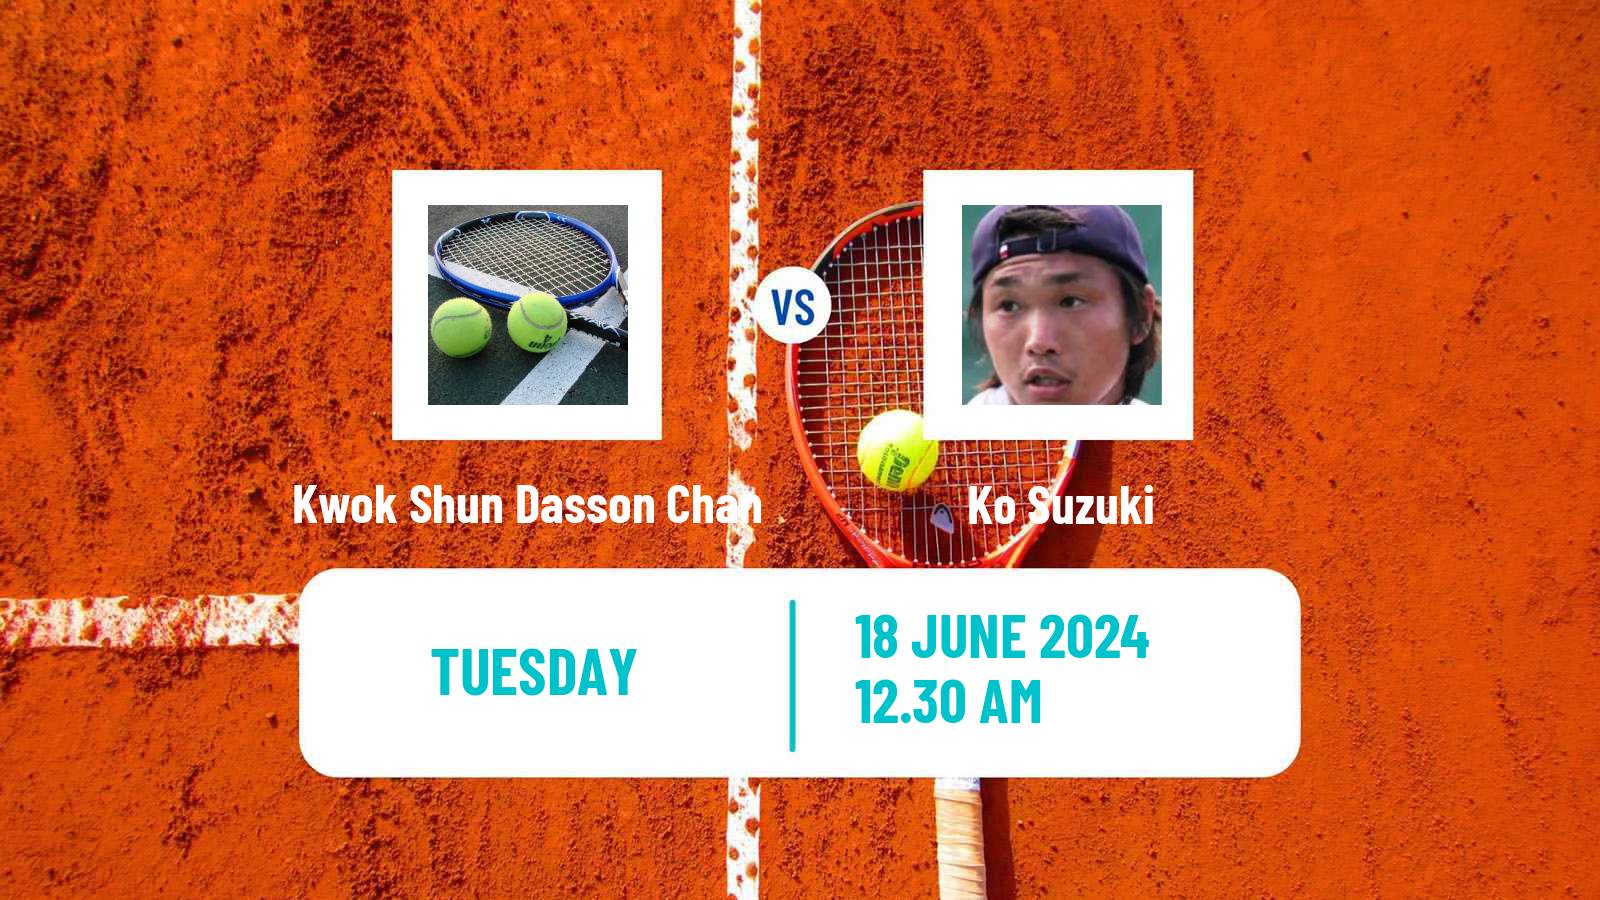 Tennis ITF M15 Hong Kong 2 Men Kwok Shun Dasson Chan - Ko Suzuki